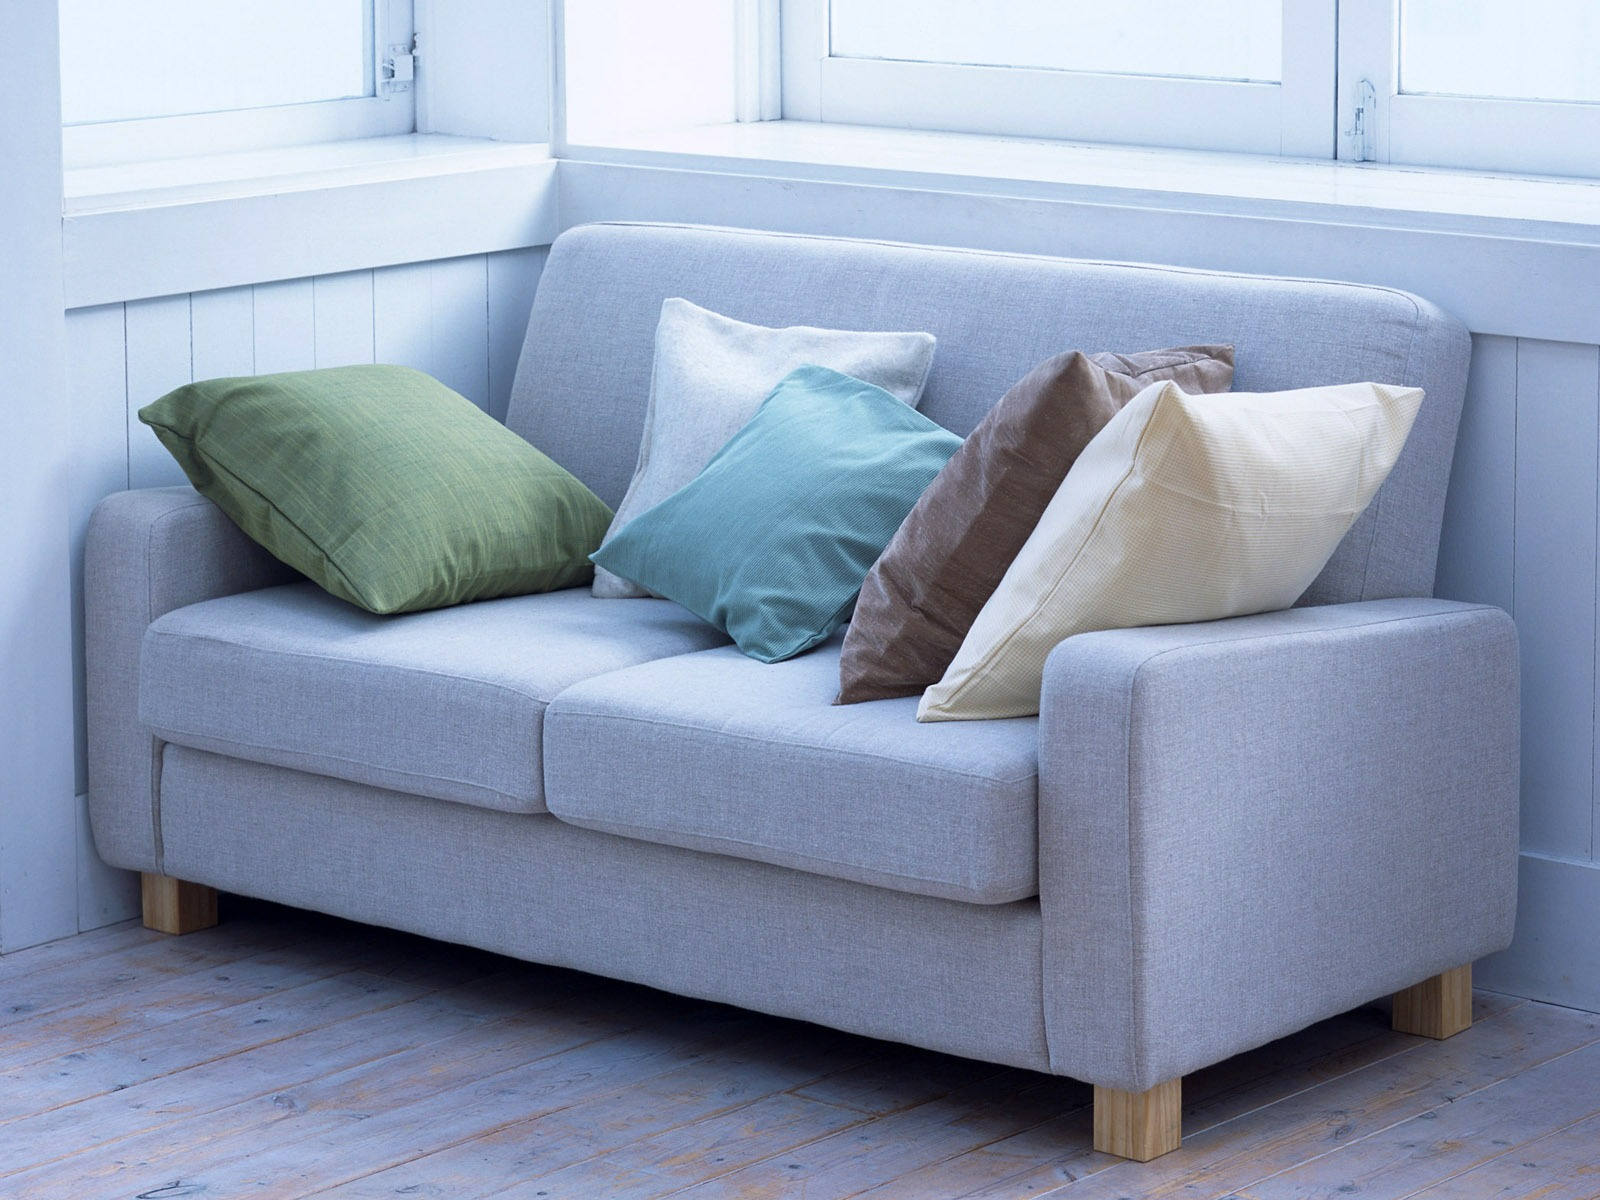 Мебель маленькие диваны. Маленький диван. Диван с мягкими подушками. Подушка для дивана. Маленький диванчик.